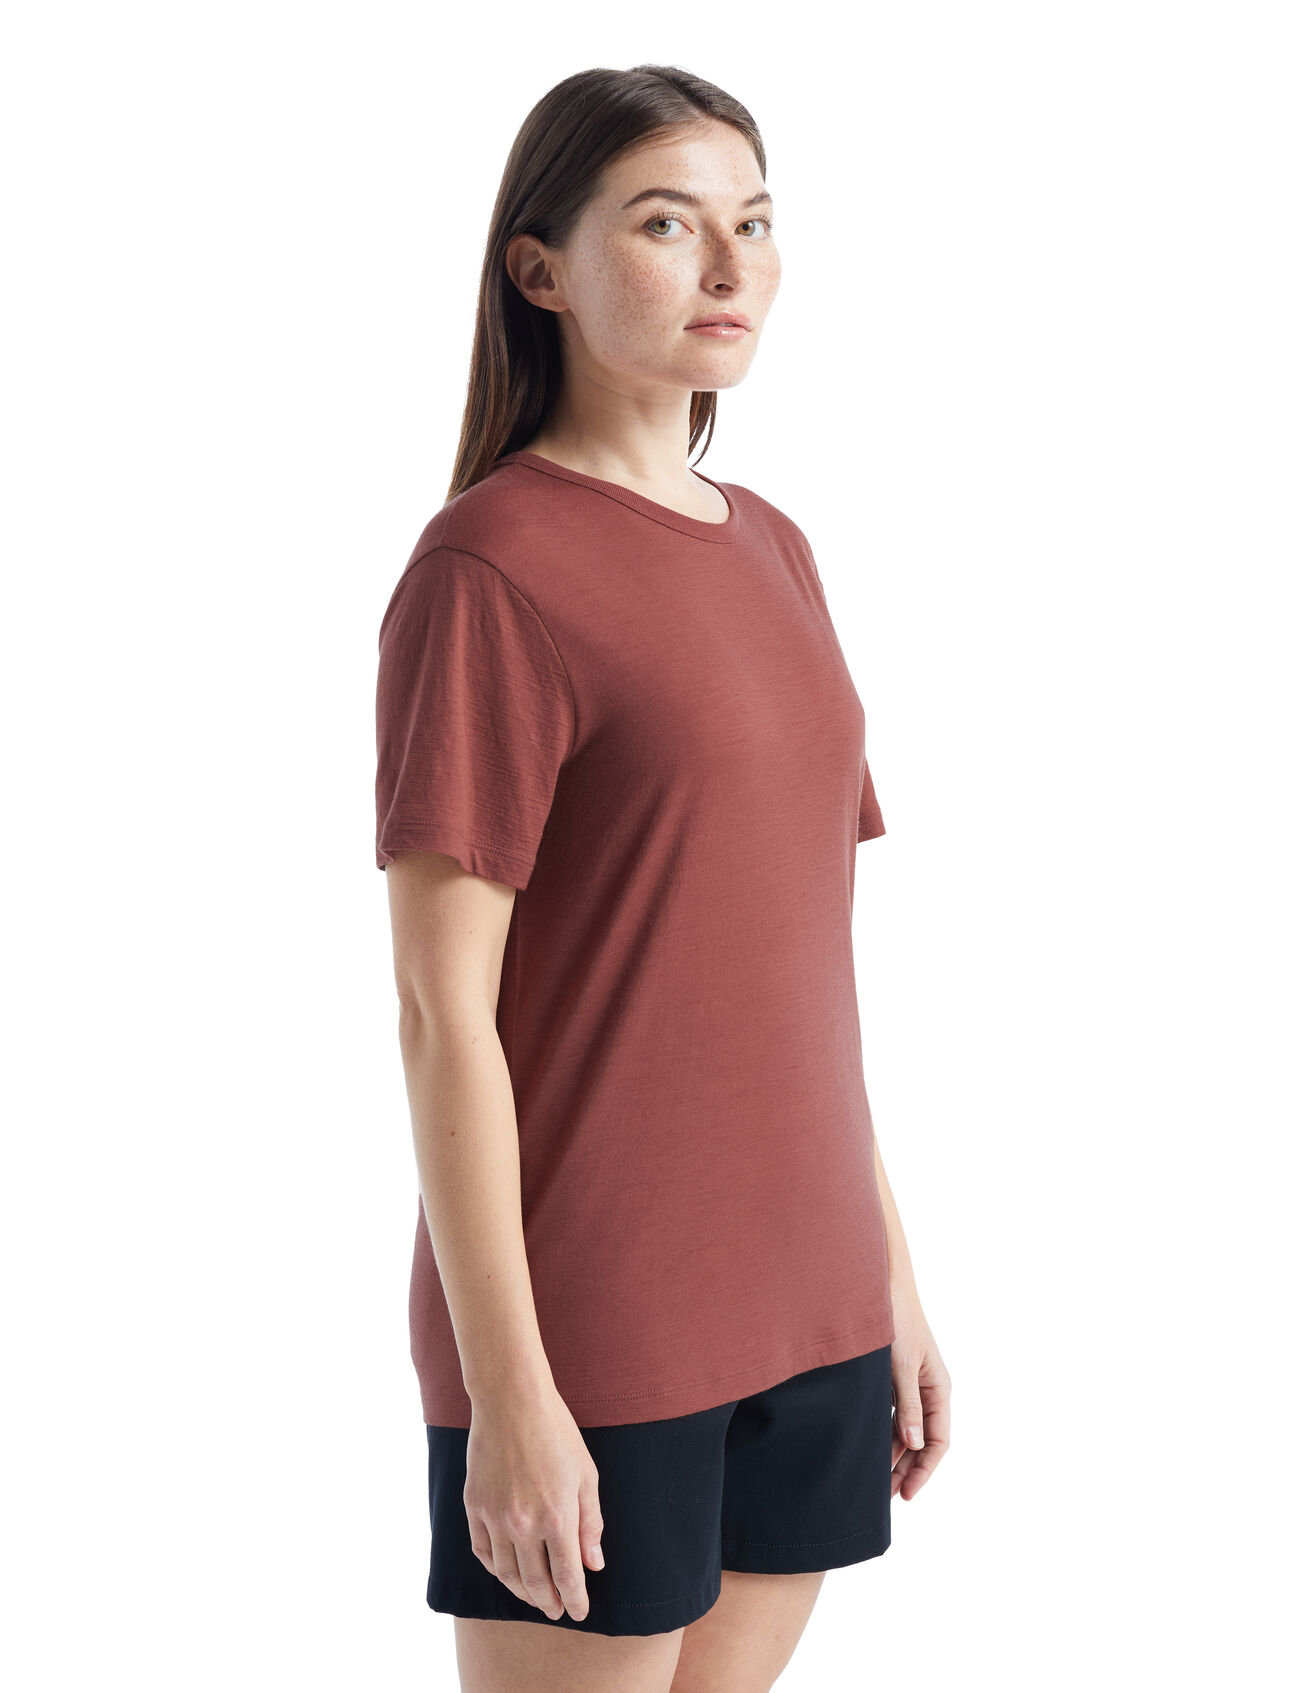 Dames Granary T-shirt met korte mouwen van merinowol De Granary is een klassiek T-shirt met korte mouwen. De top heeft een relaxte pasvorm en is gemaakt van zachte, ademende stof van 100% merinowol. Het stijlvolle T-shirt biedt een alledaags comfort. 